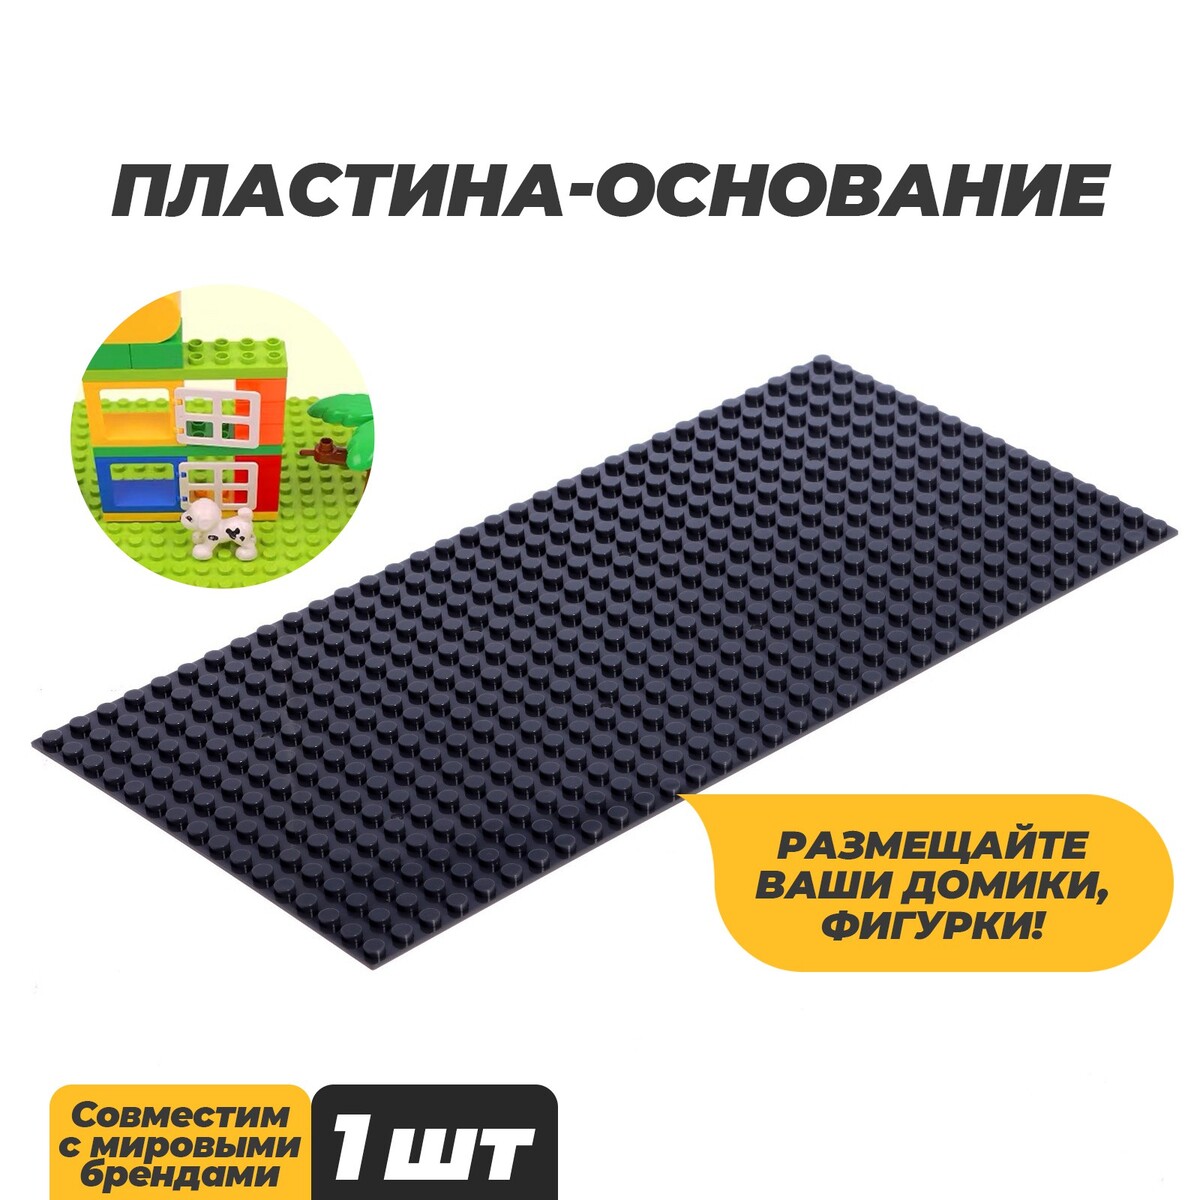 Пластина-основание для конструктора, 25,5 × 12,5 см, цвет серый пластина основание для конструктора 40 х 40 см зеленый